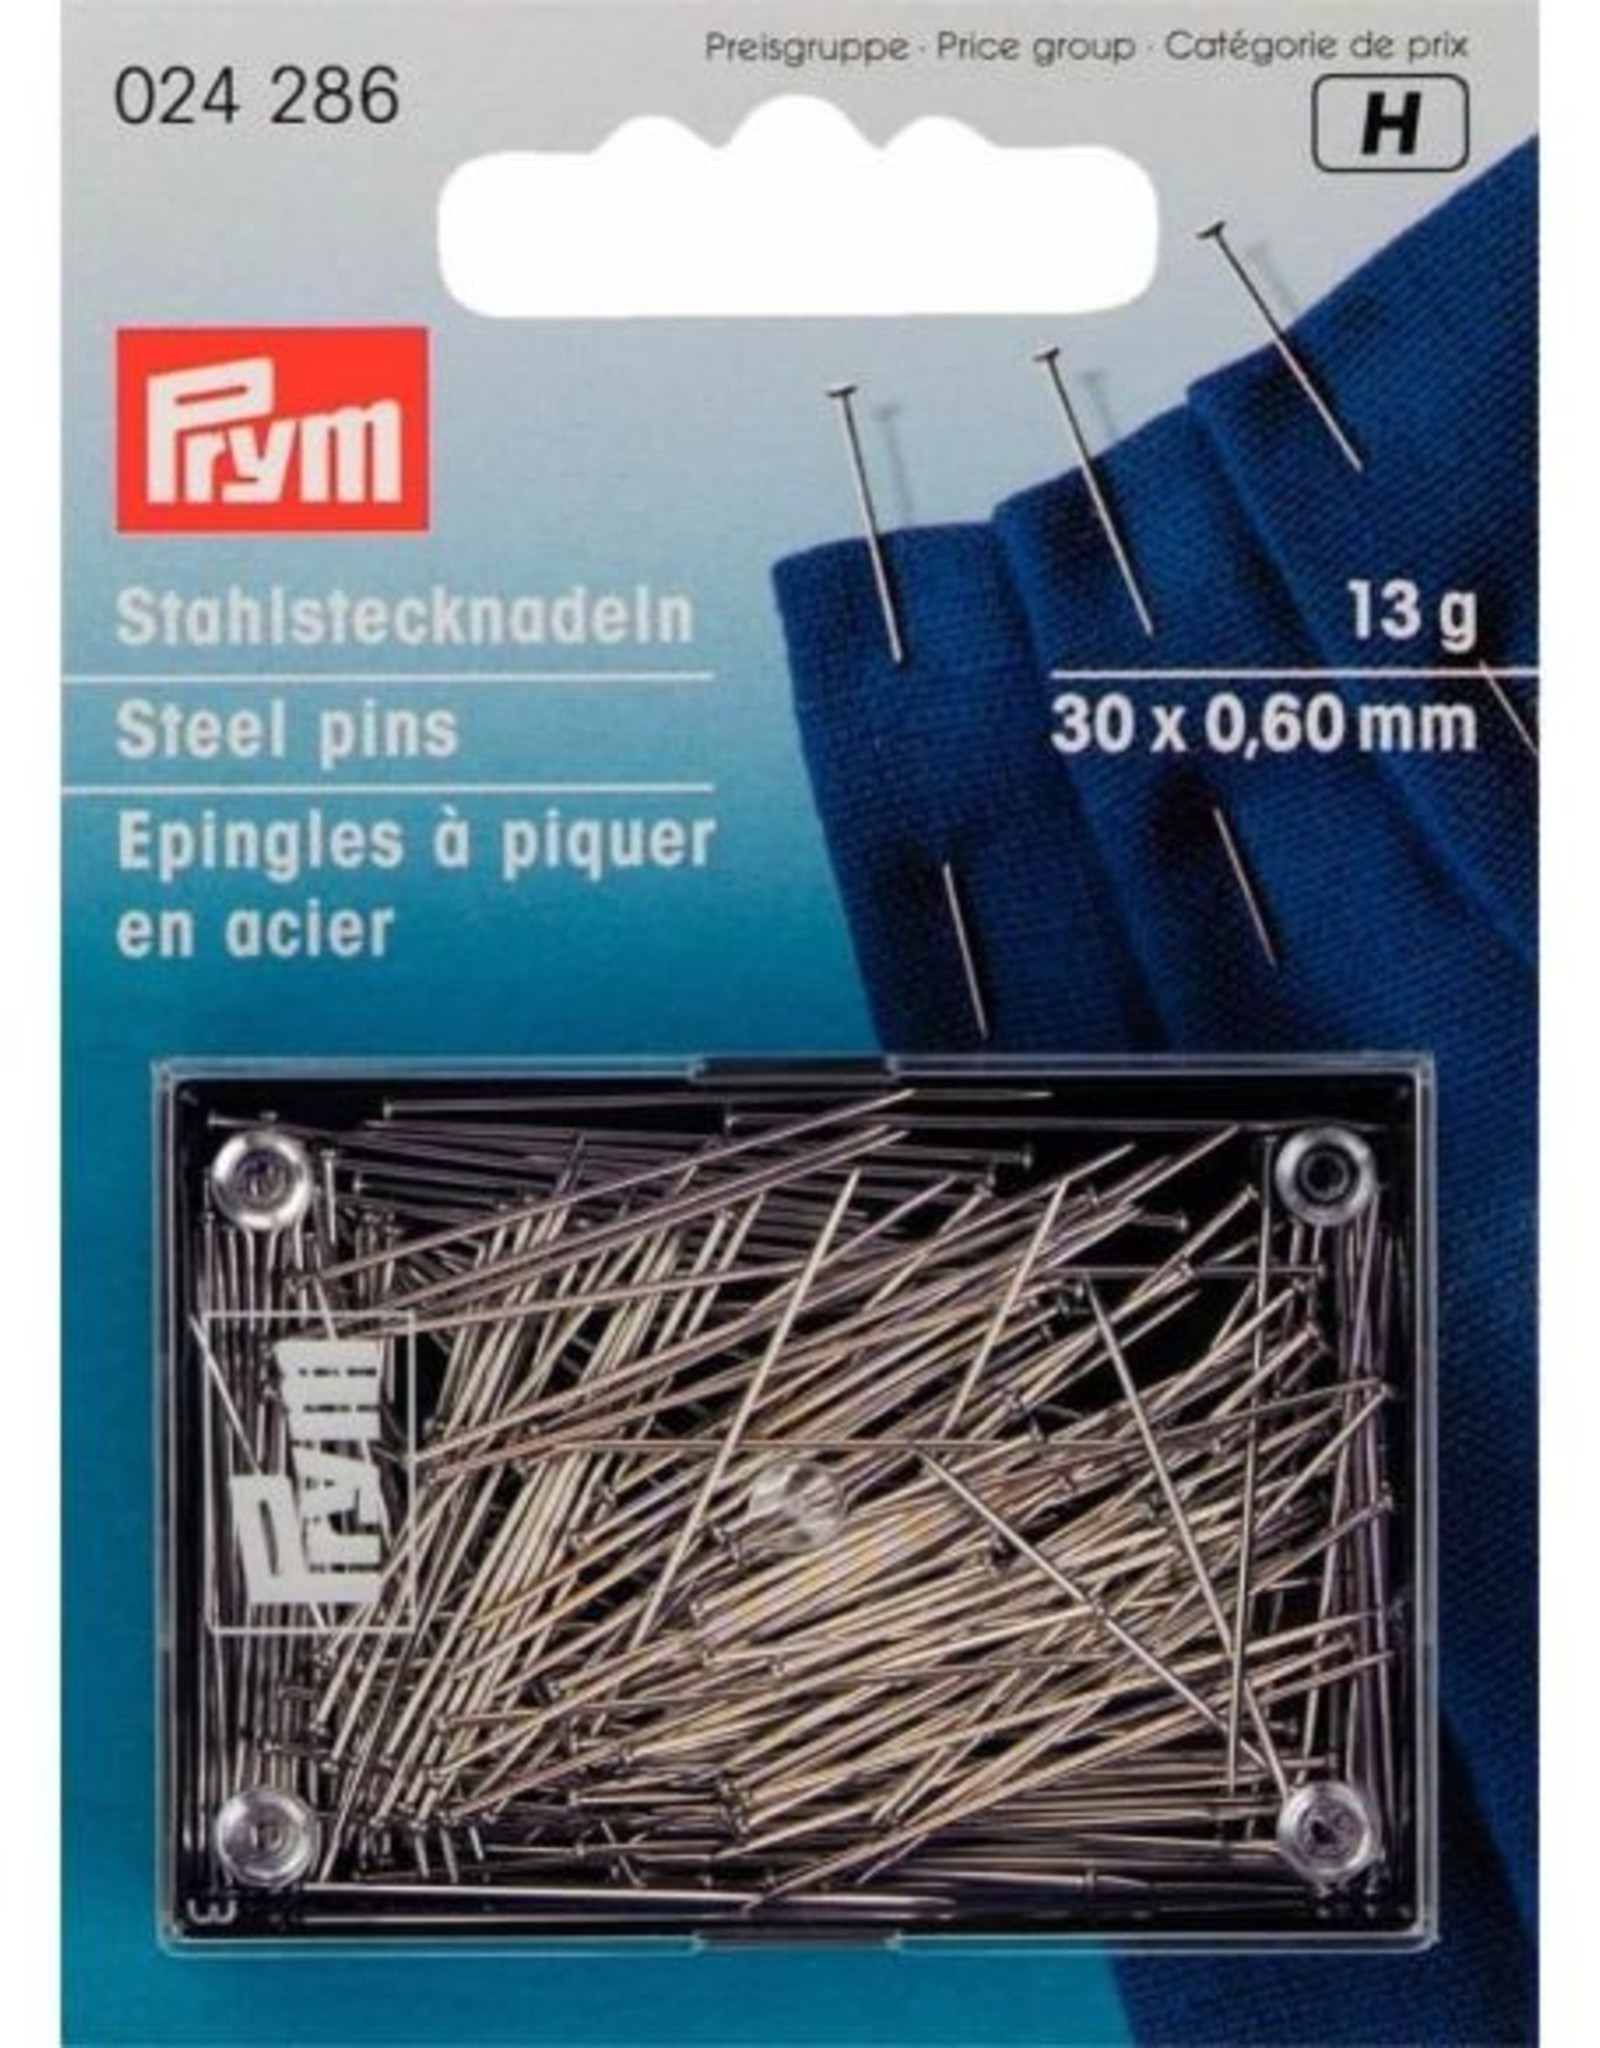 Prym Prym - Spelden staal 30 x 0,6mm 13g - 024 286